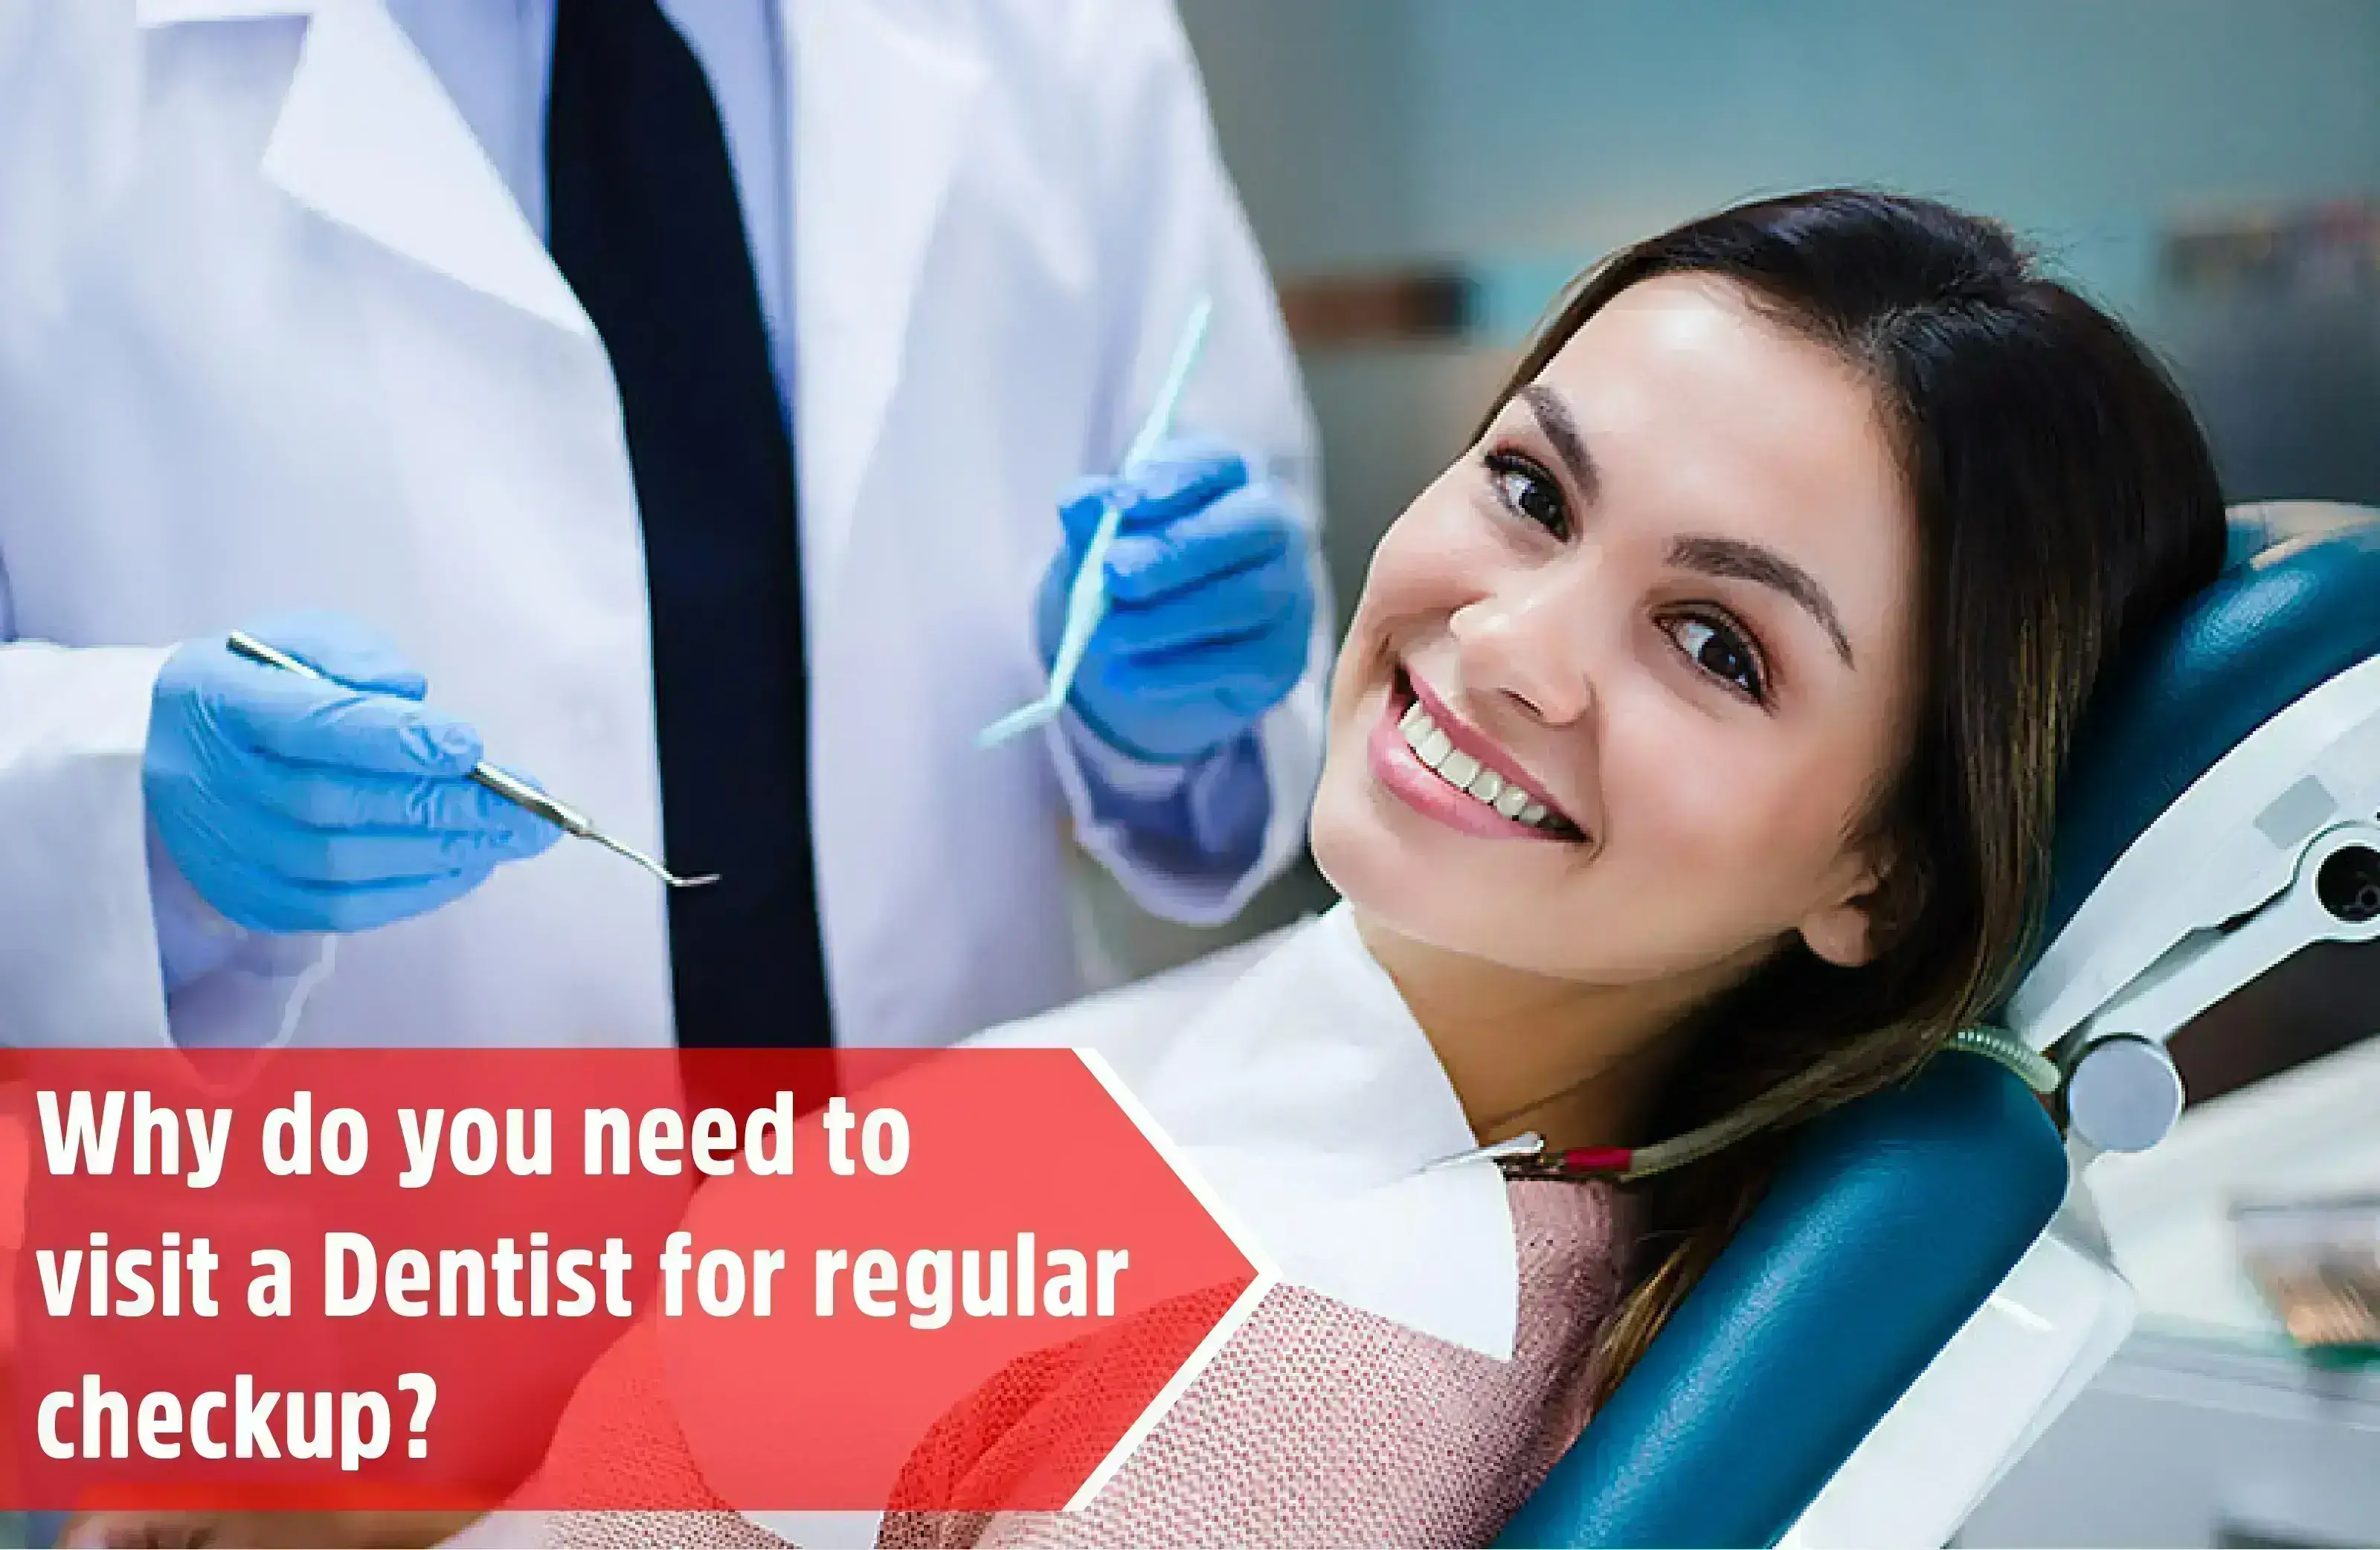 Dentist for regular checkup